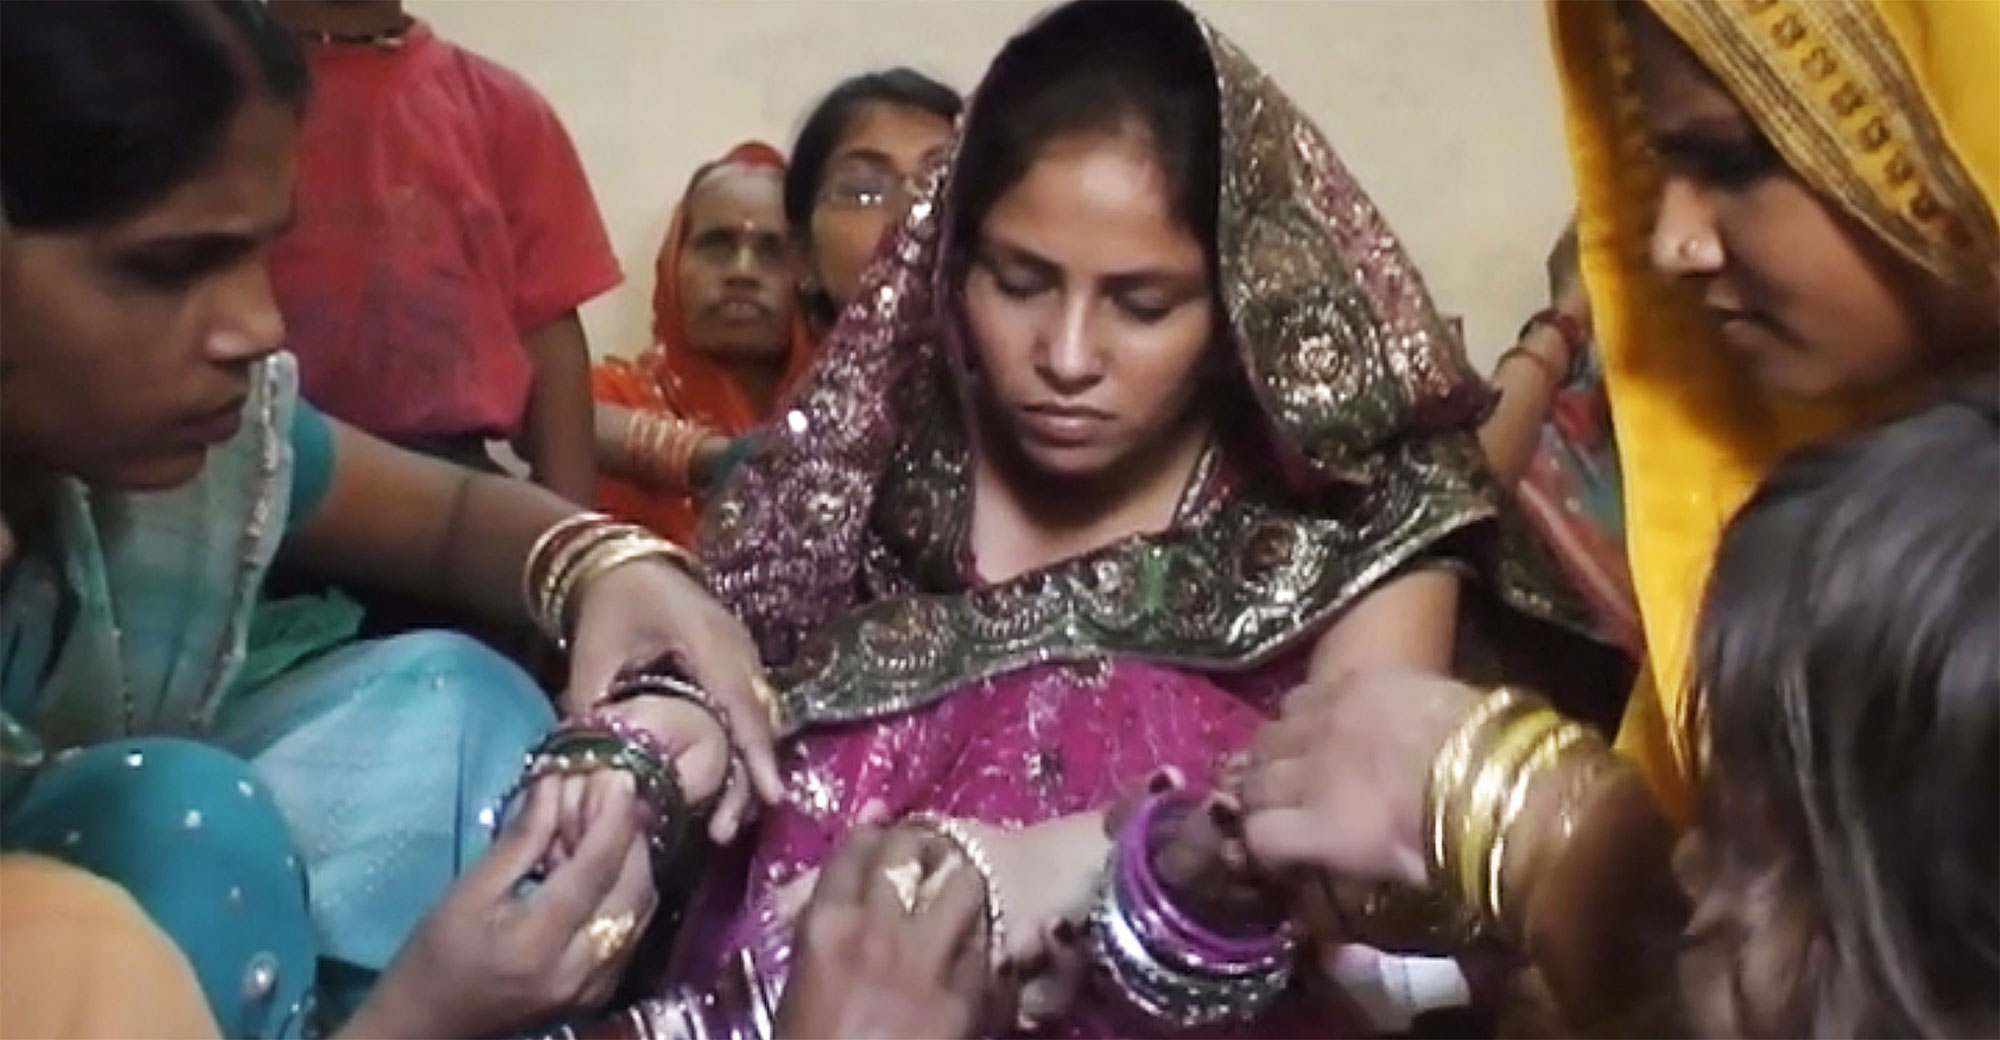 Кадр з фільму "Рішення". Середній план. Барвистий весільний індійський одяг. На передньому плані двоє жінок зосереджено вдягають прикраси на руки третьої, її обличчя напружене. Позаду сидять люди.